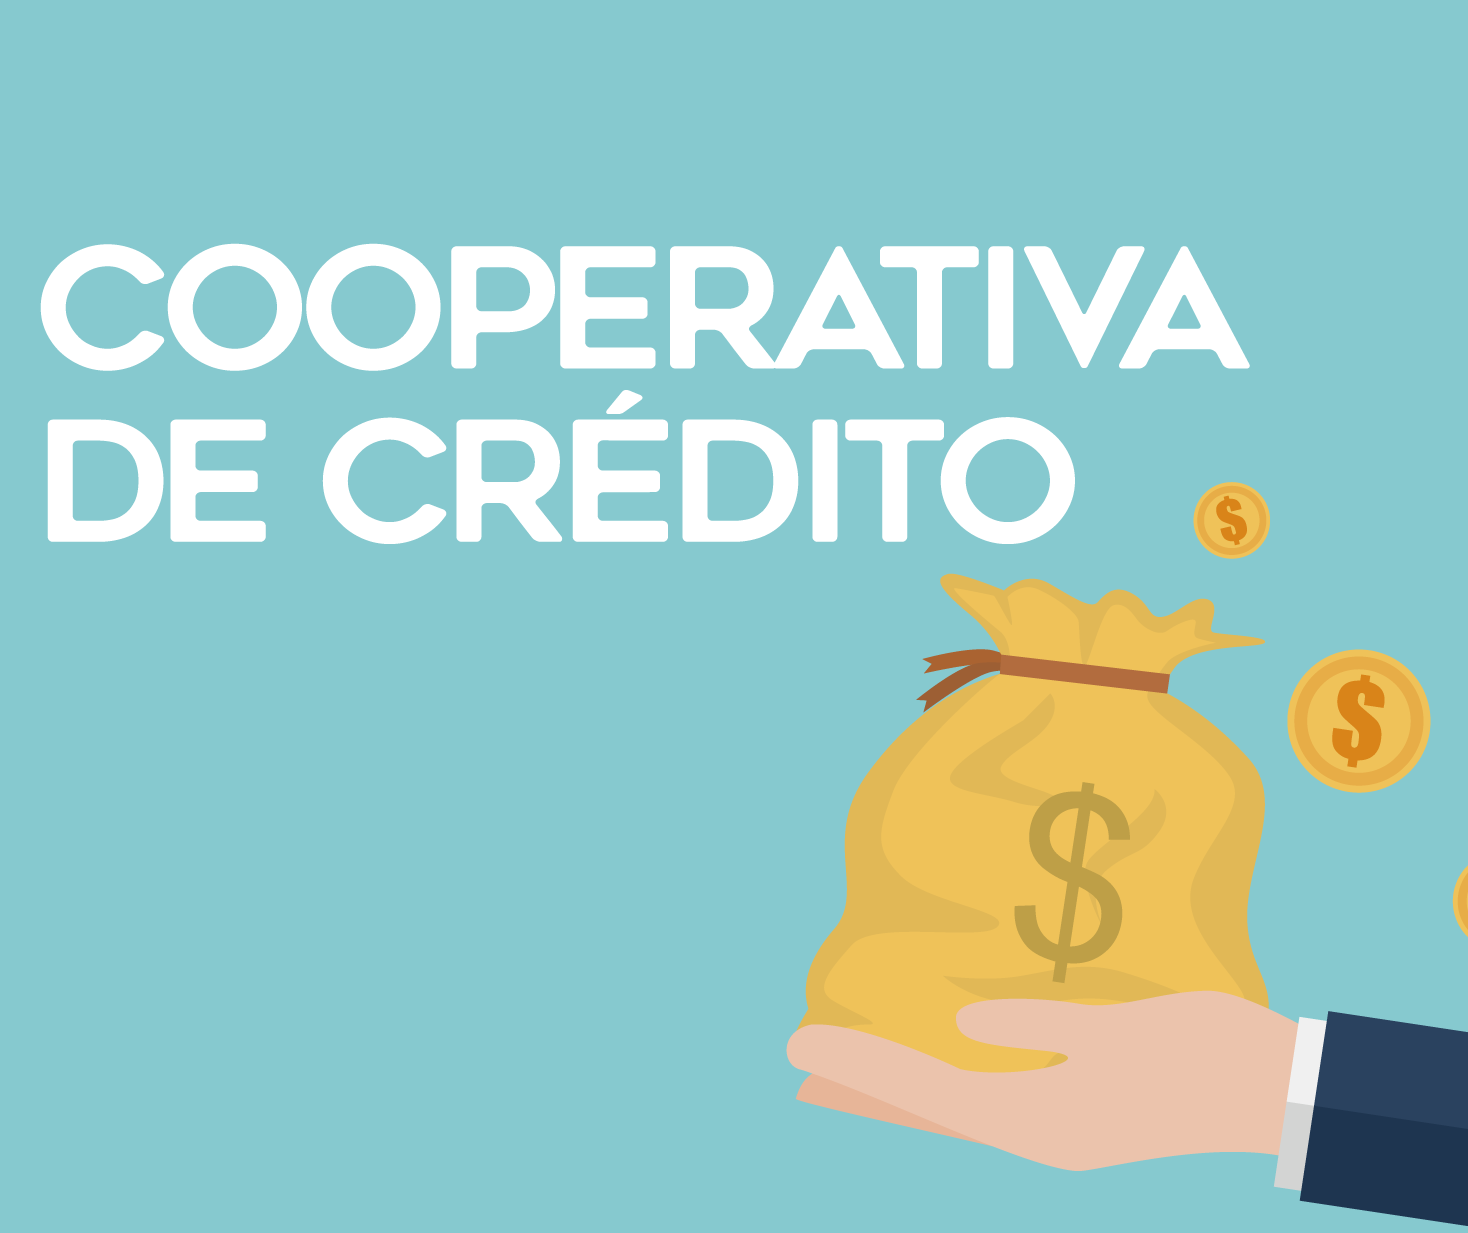 Cooperativas de crédito representam menos de 8% do mercado de crédito do país